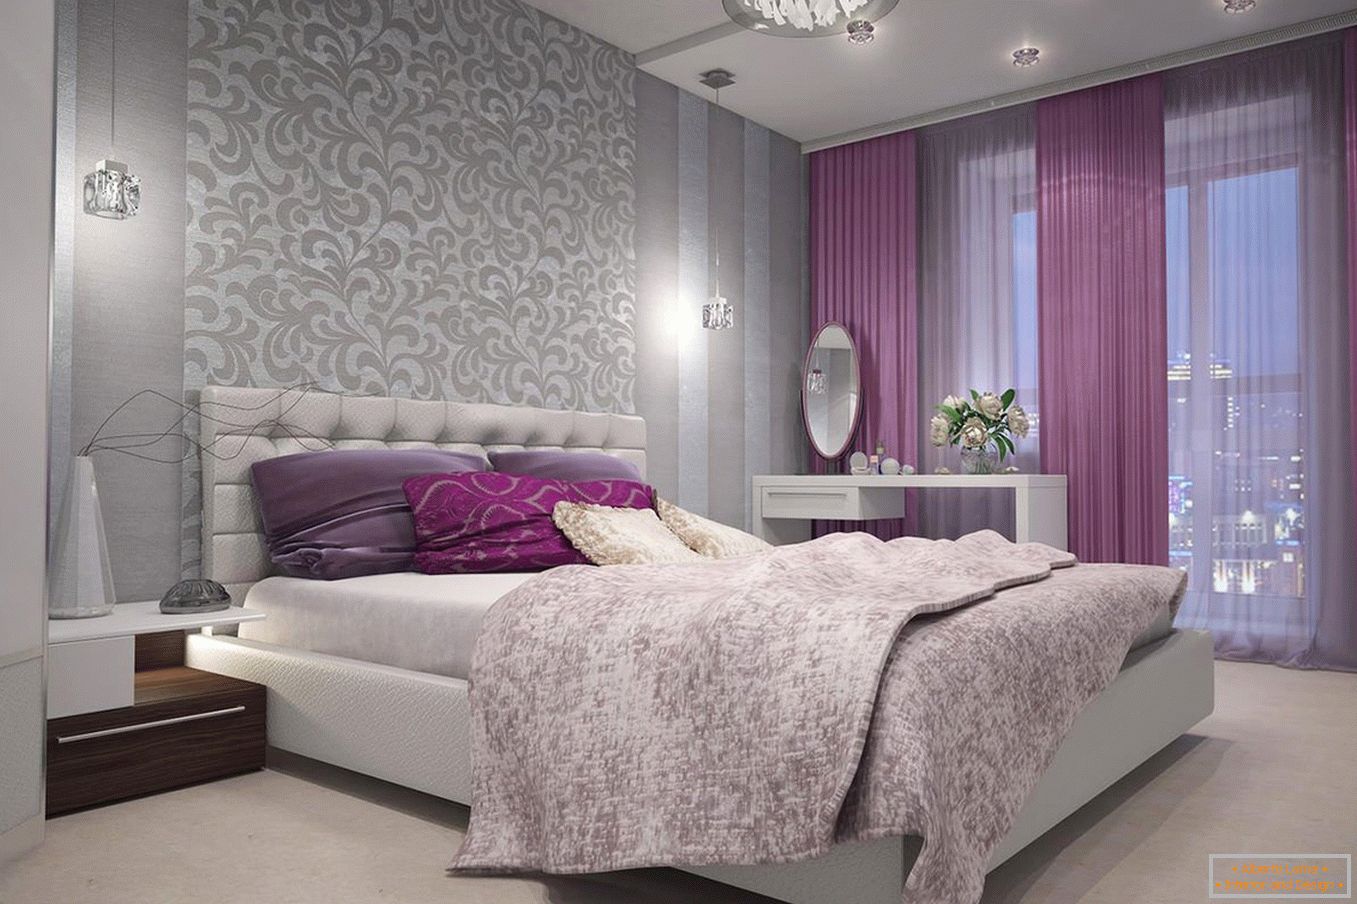 Cortinas violetas en el dormitorio